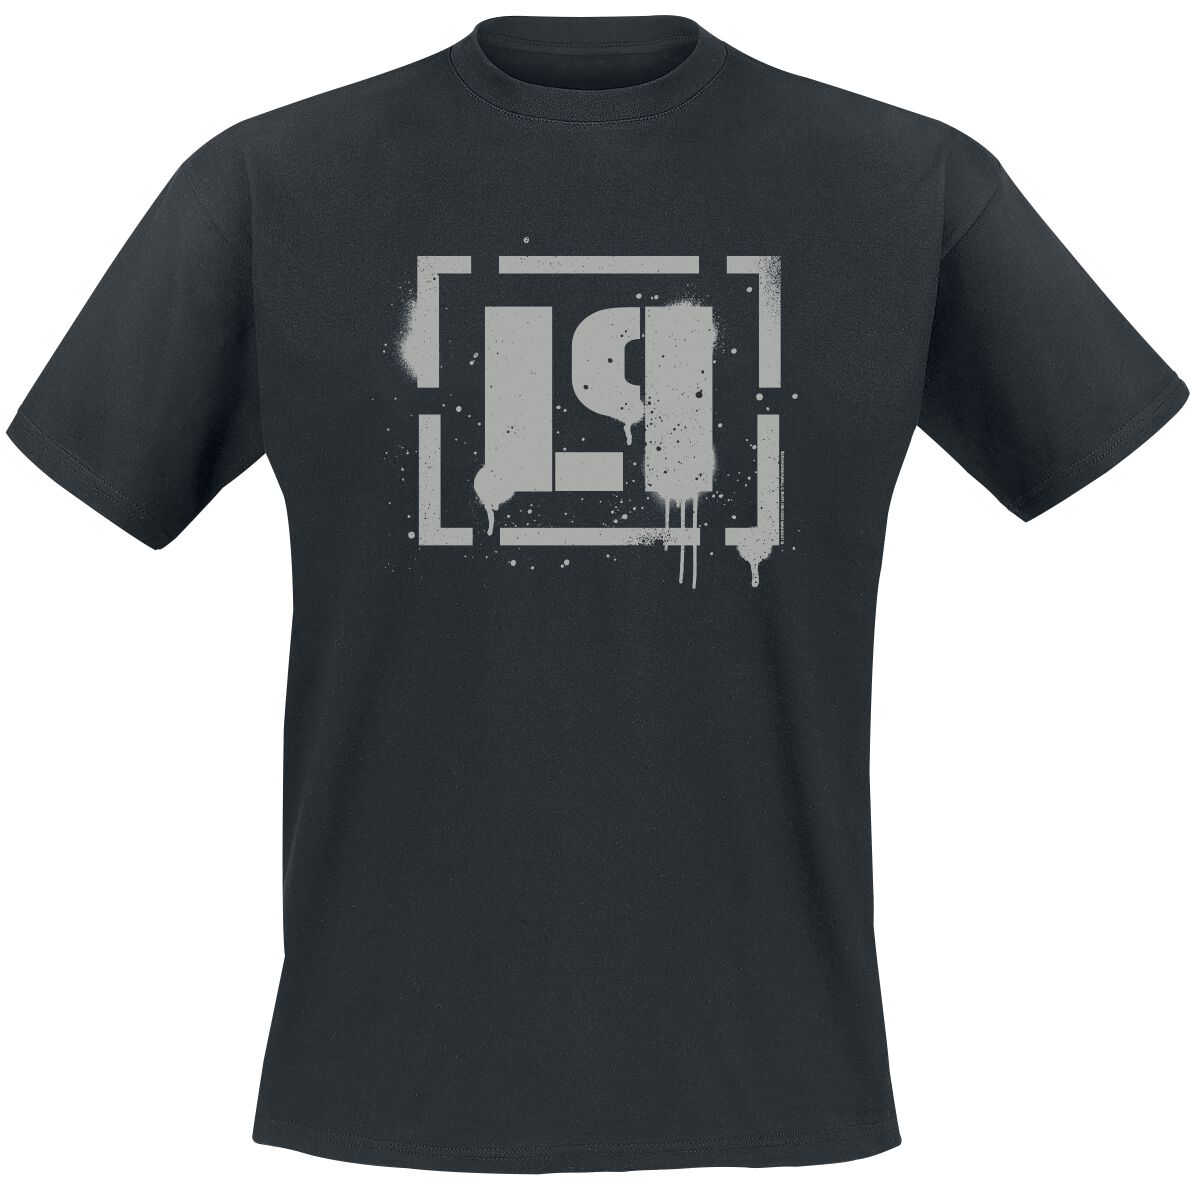 Linkin Park T-Shirt - Meteora Bracket Spray Logo - S bis 4XL - für Männer - Größe 4XL - schwarz  - Lizenziertes Merchandise!